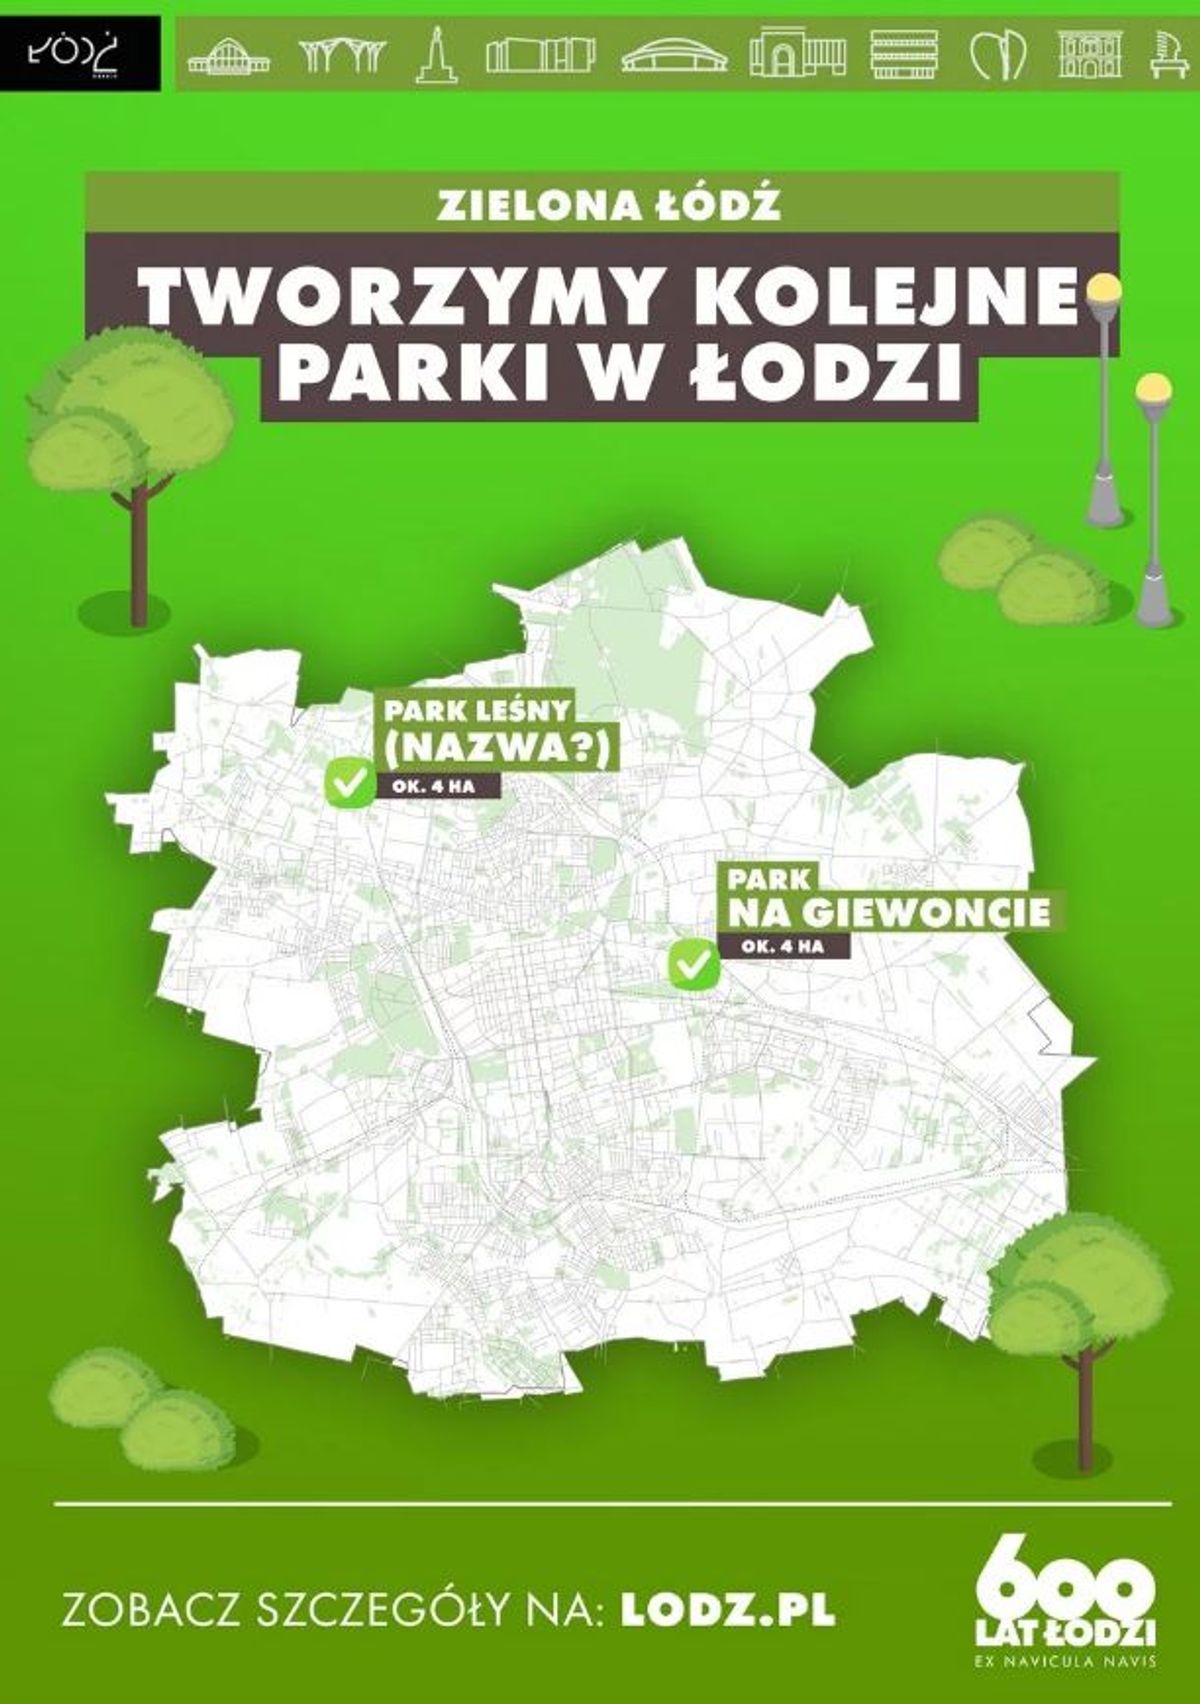 UM Łódź